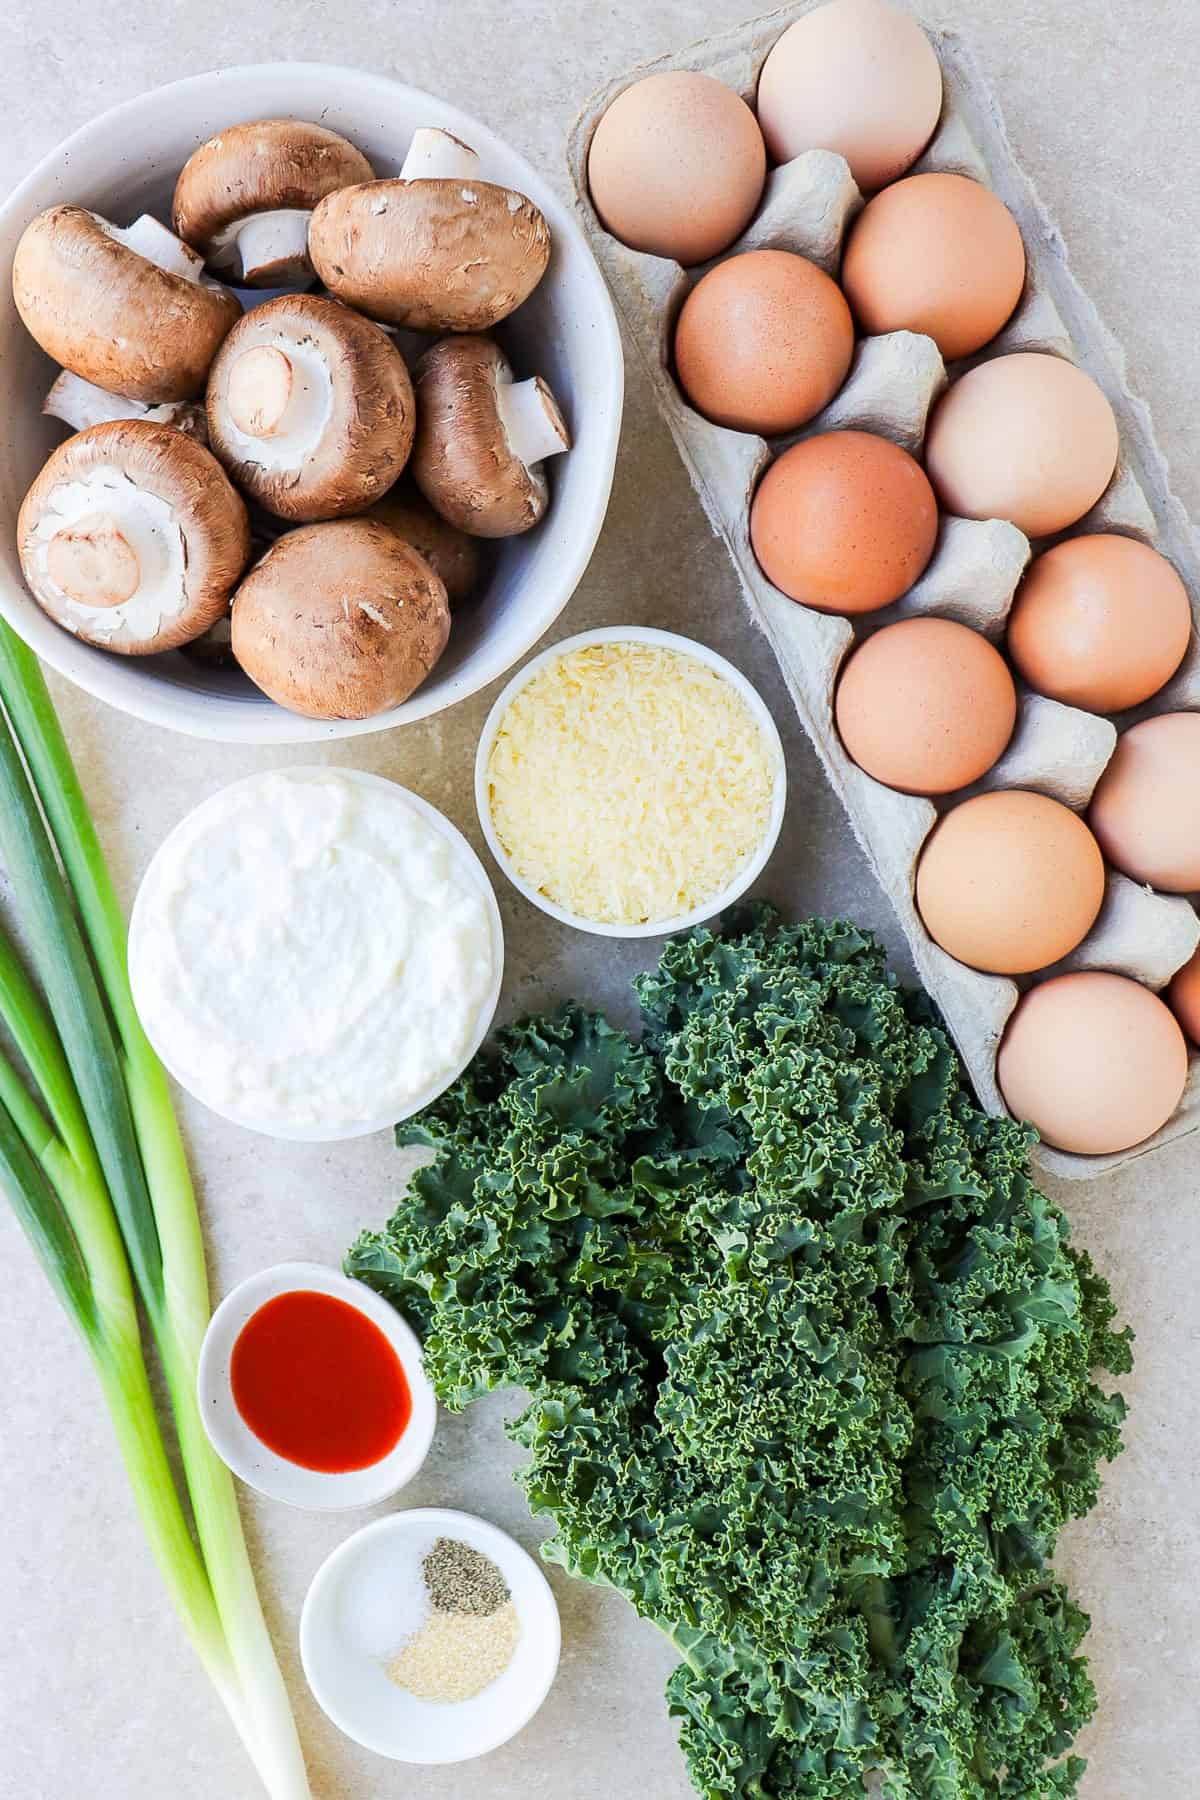 Ingredients shown to make egg bites.